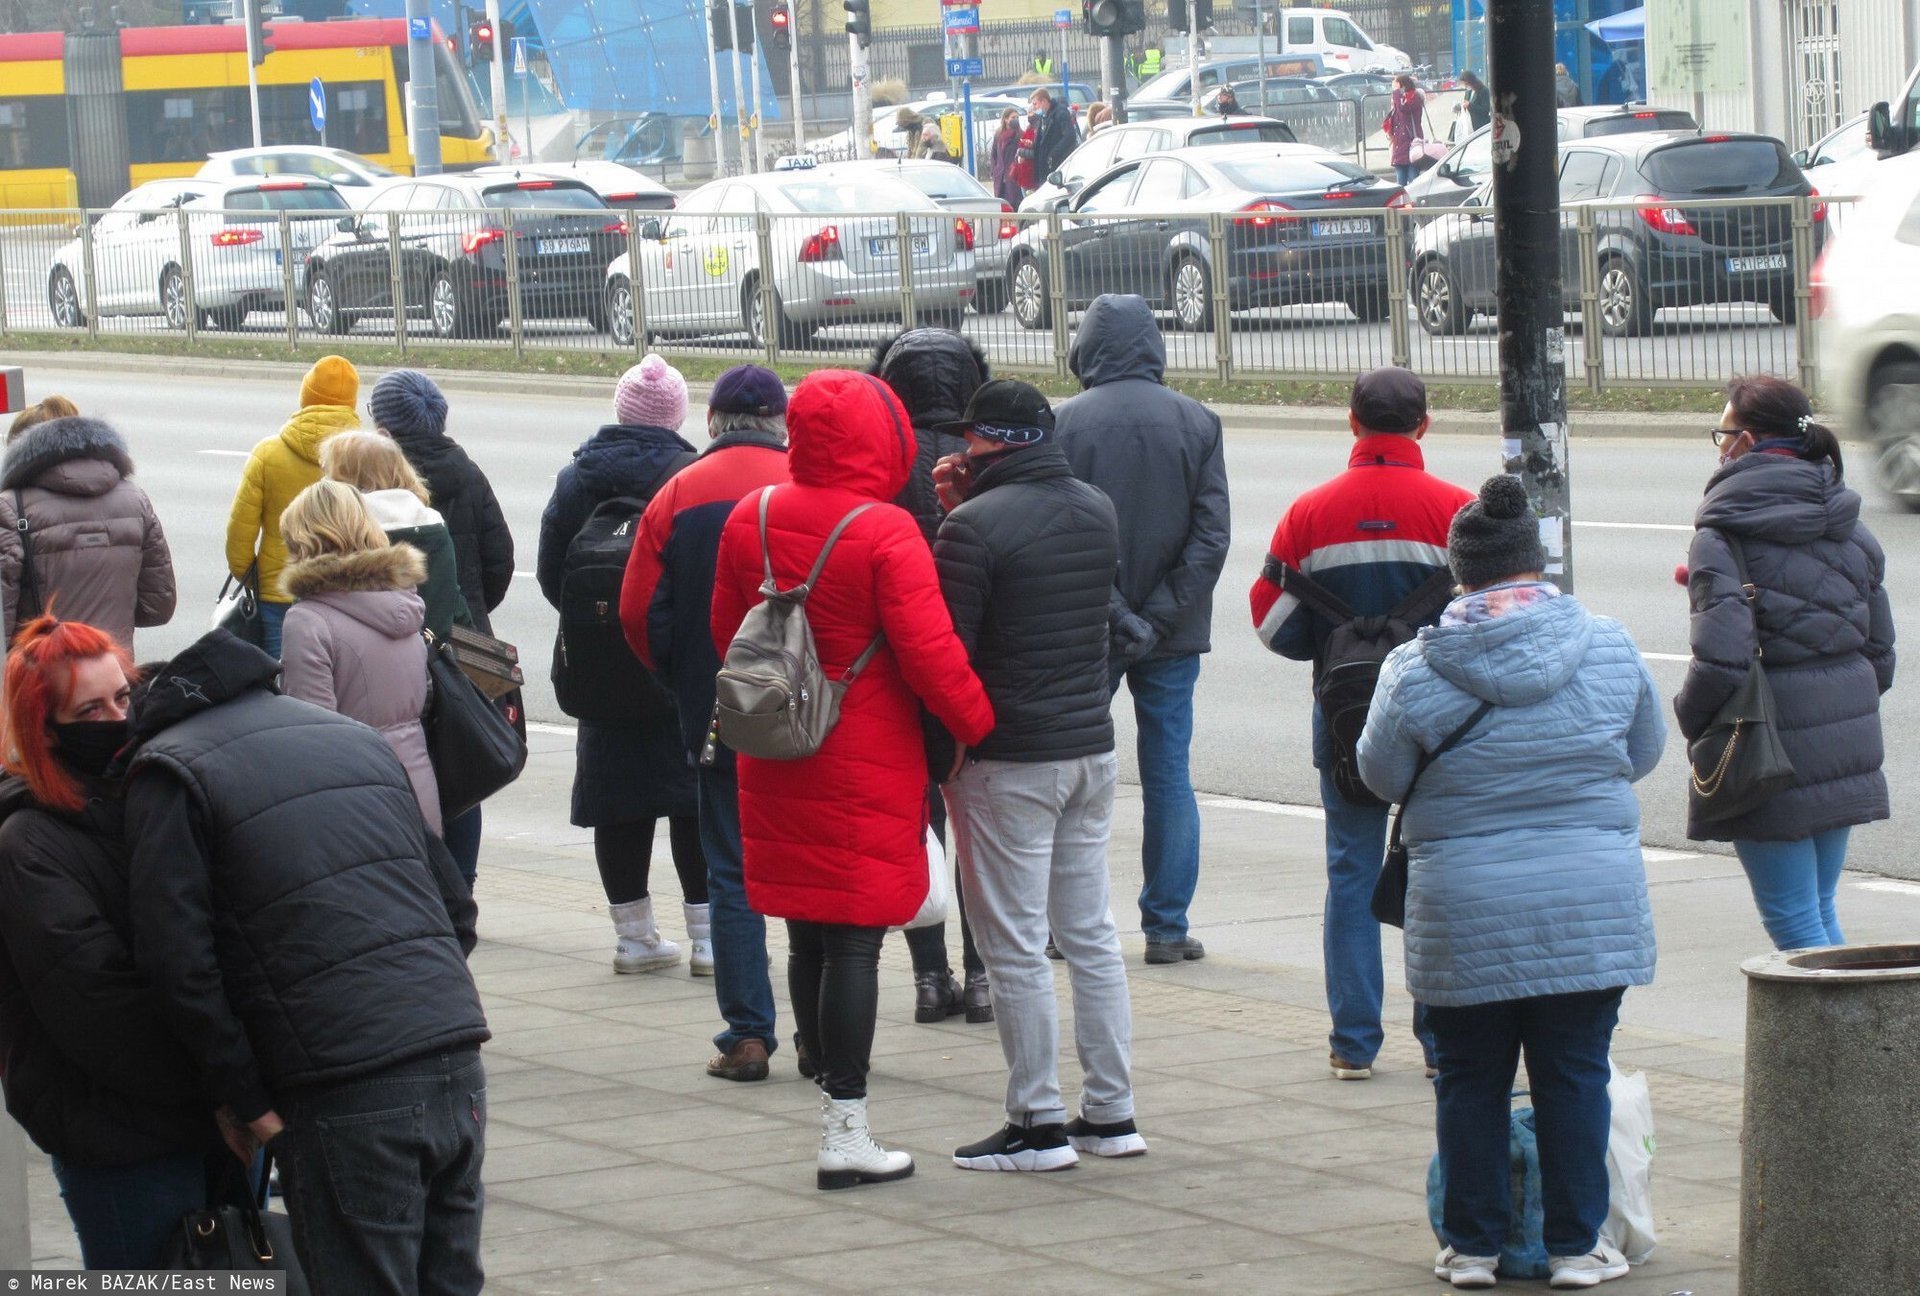  PHOTO: ZOFIA I MAREK BAZAK / EAST NEWS Warszawa Praga Polnoc Plac Wilenski N/Z Tlum ludzi oczekujacych na autobus miejski